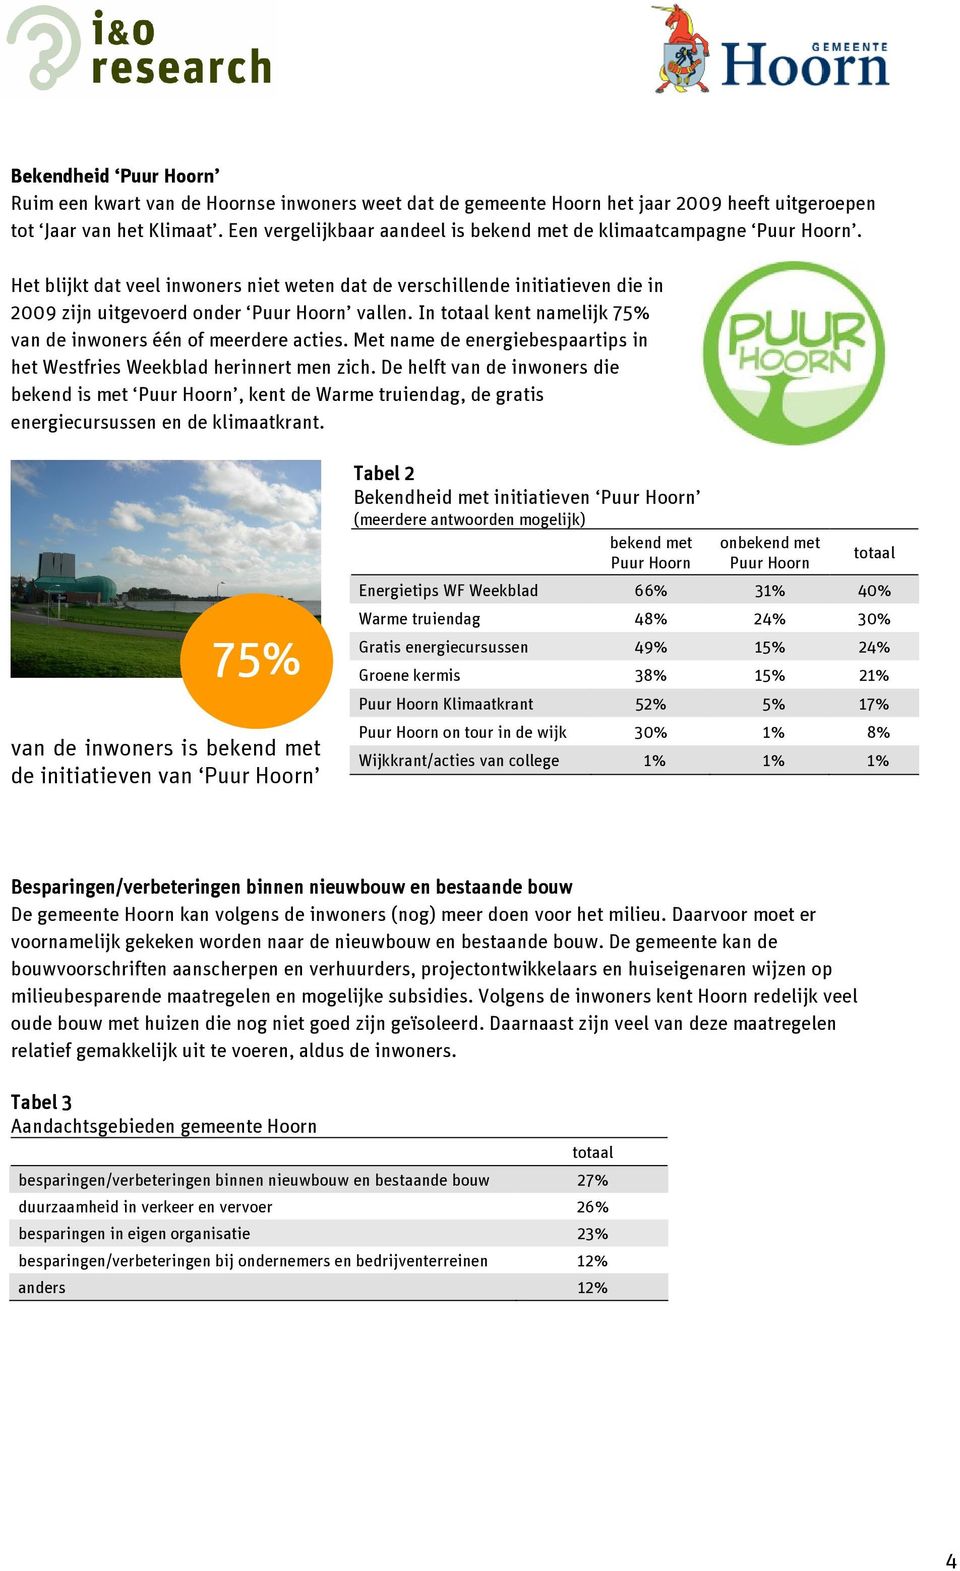 In totaal kent namelijk 75% van de inwoners één of meerdere acties. Met name de energiebespaartips in het Westfries Weekblad herinnert men zich.